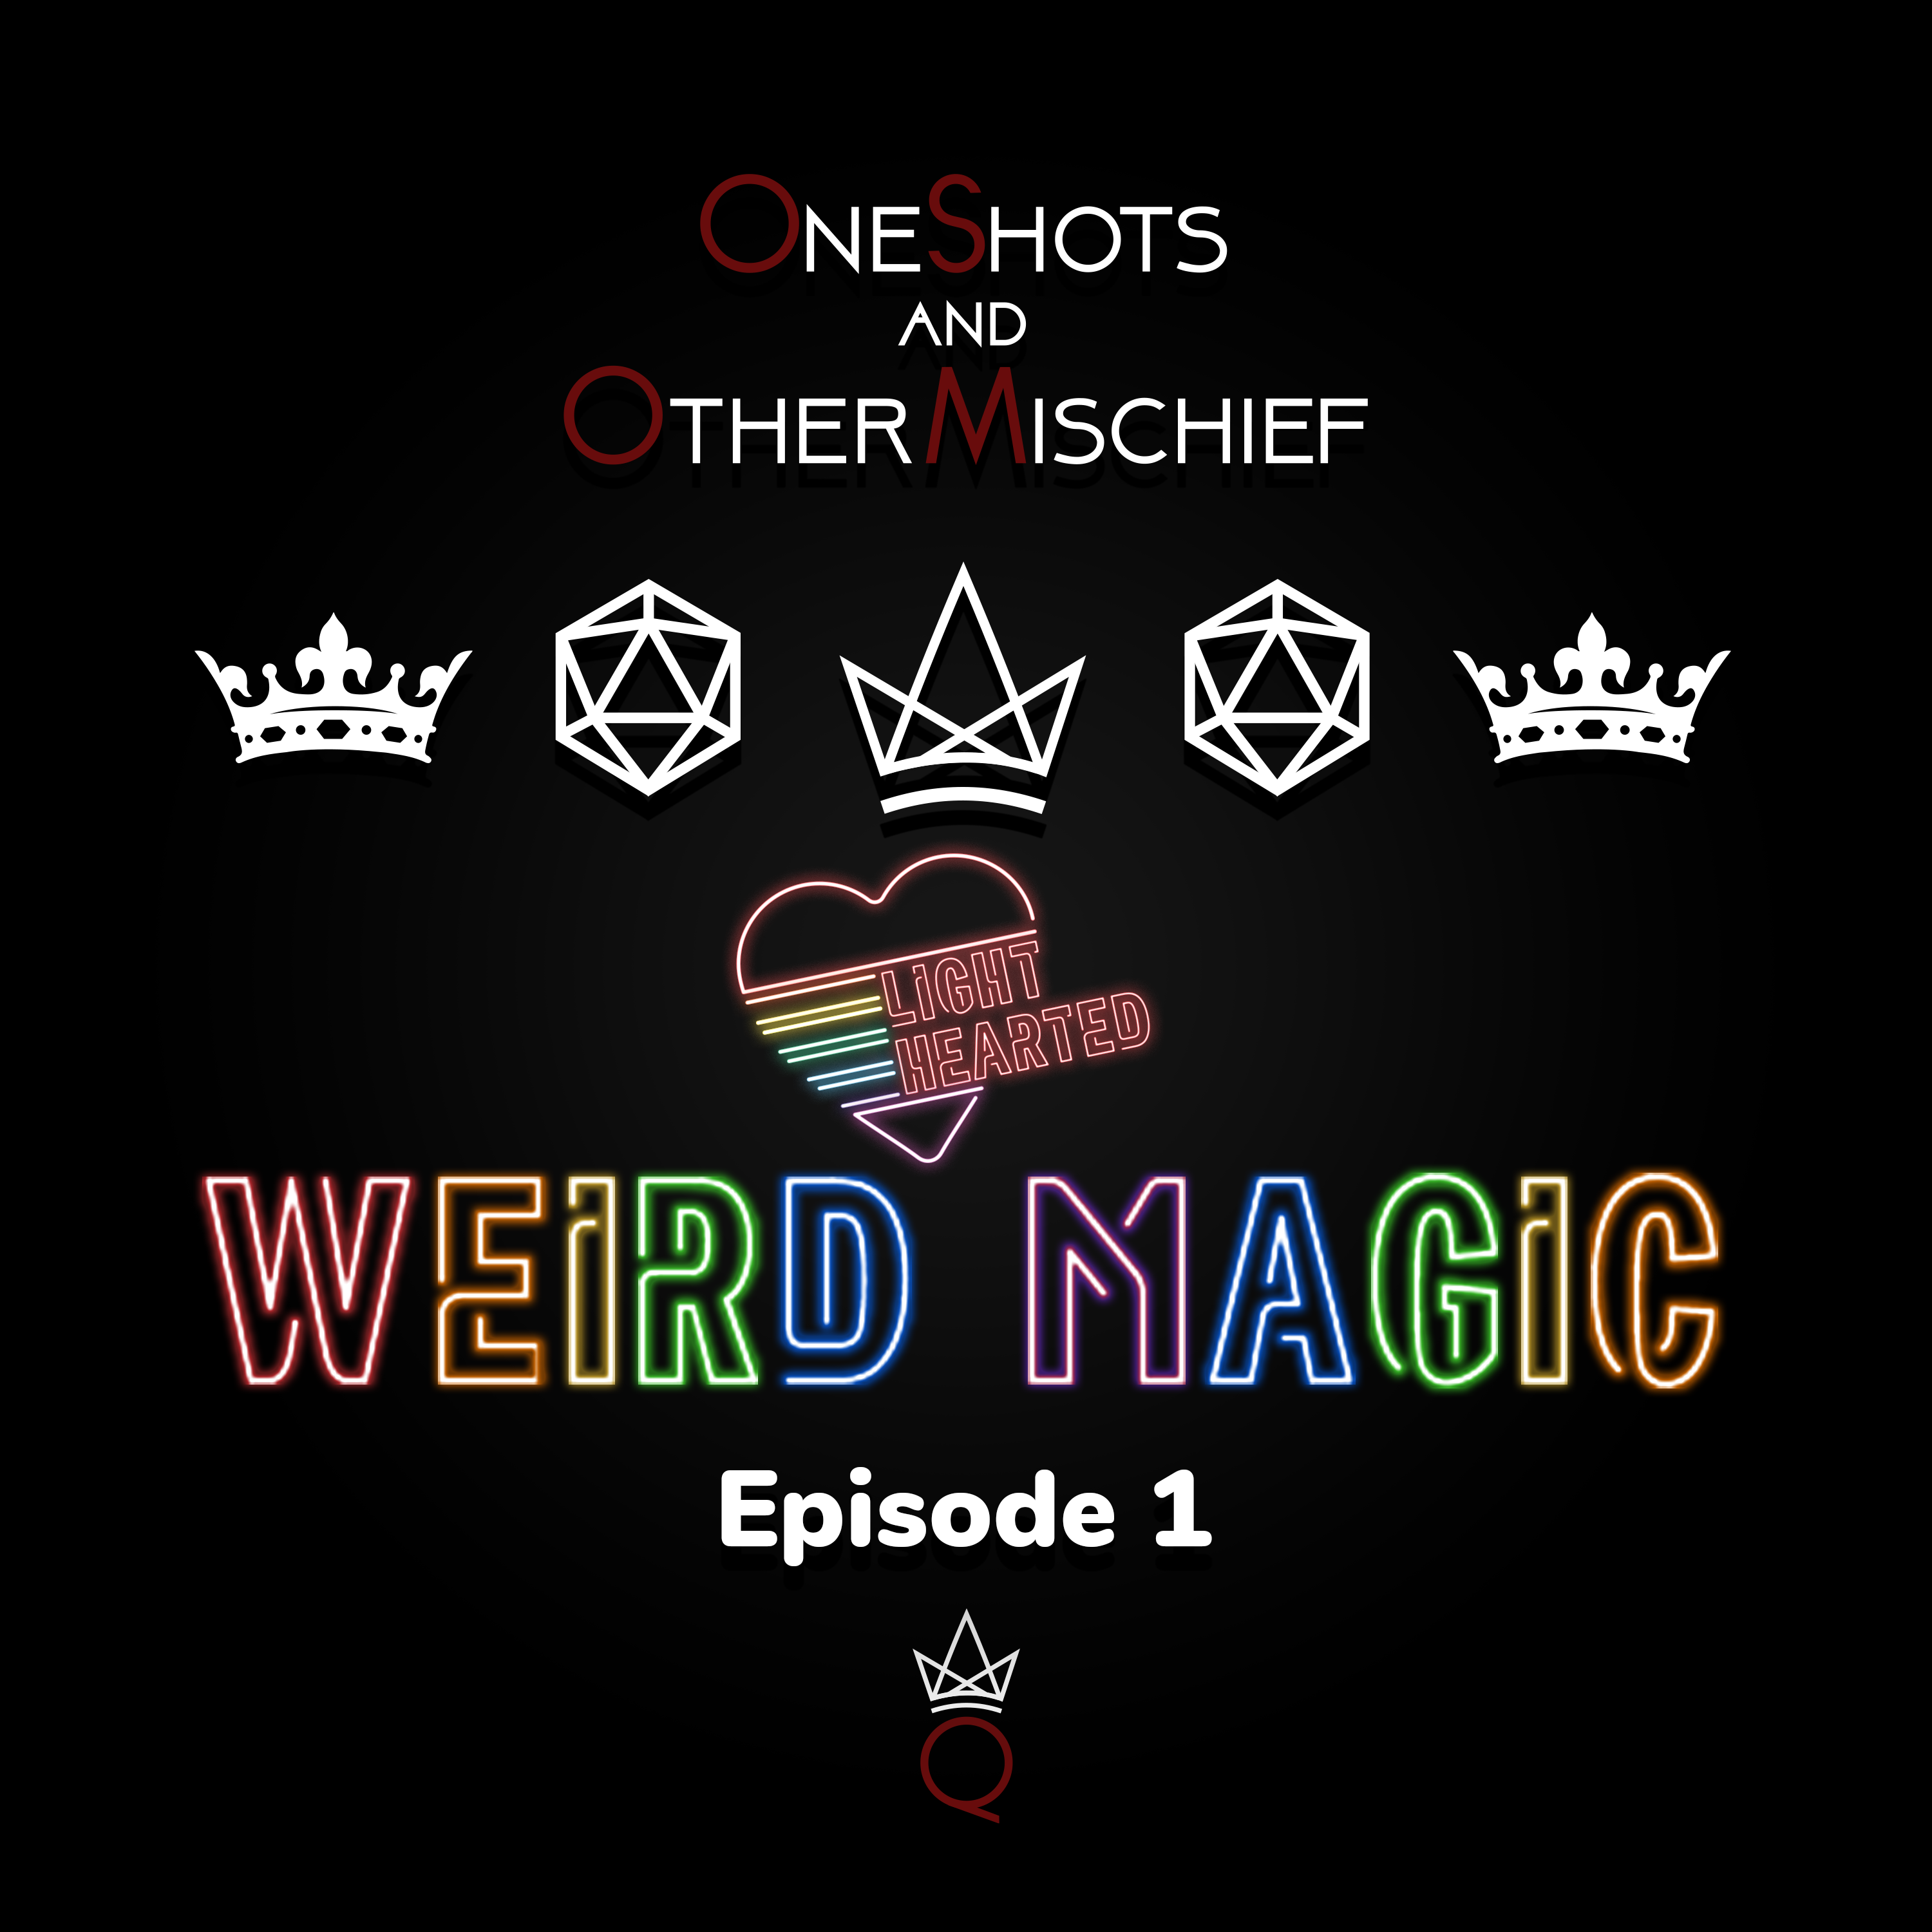 Lighthearted - Weird Magic, Episode 1